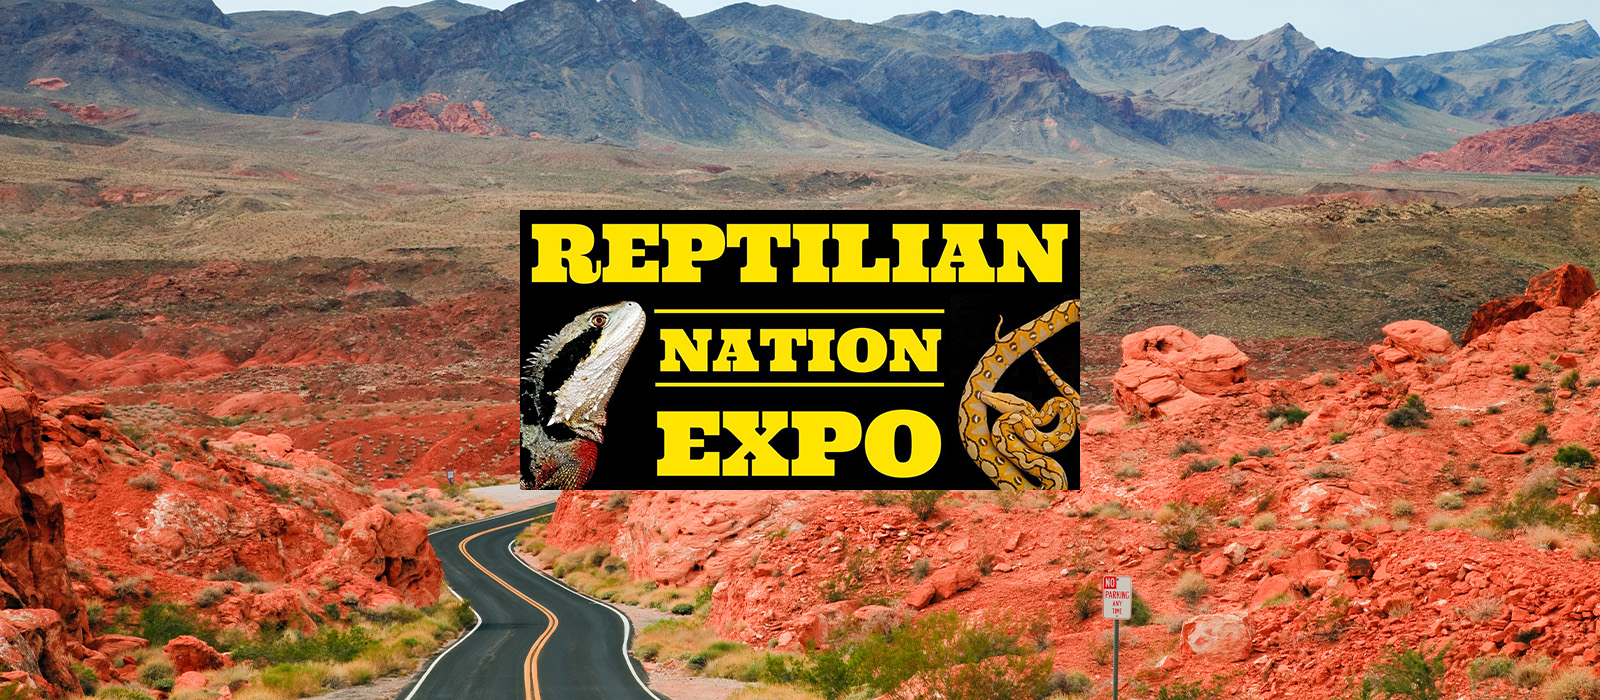 Reptilian Nation Expo banner